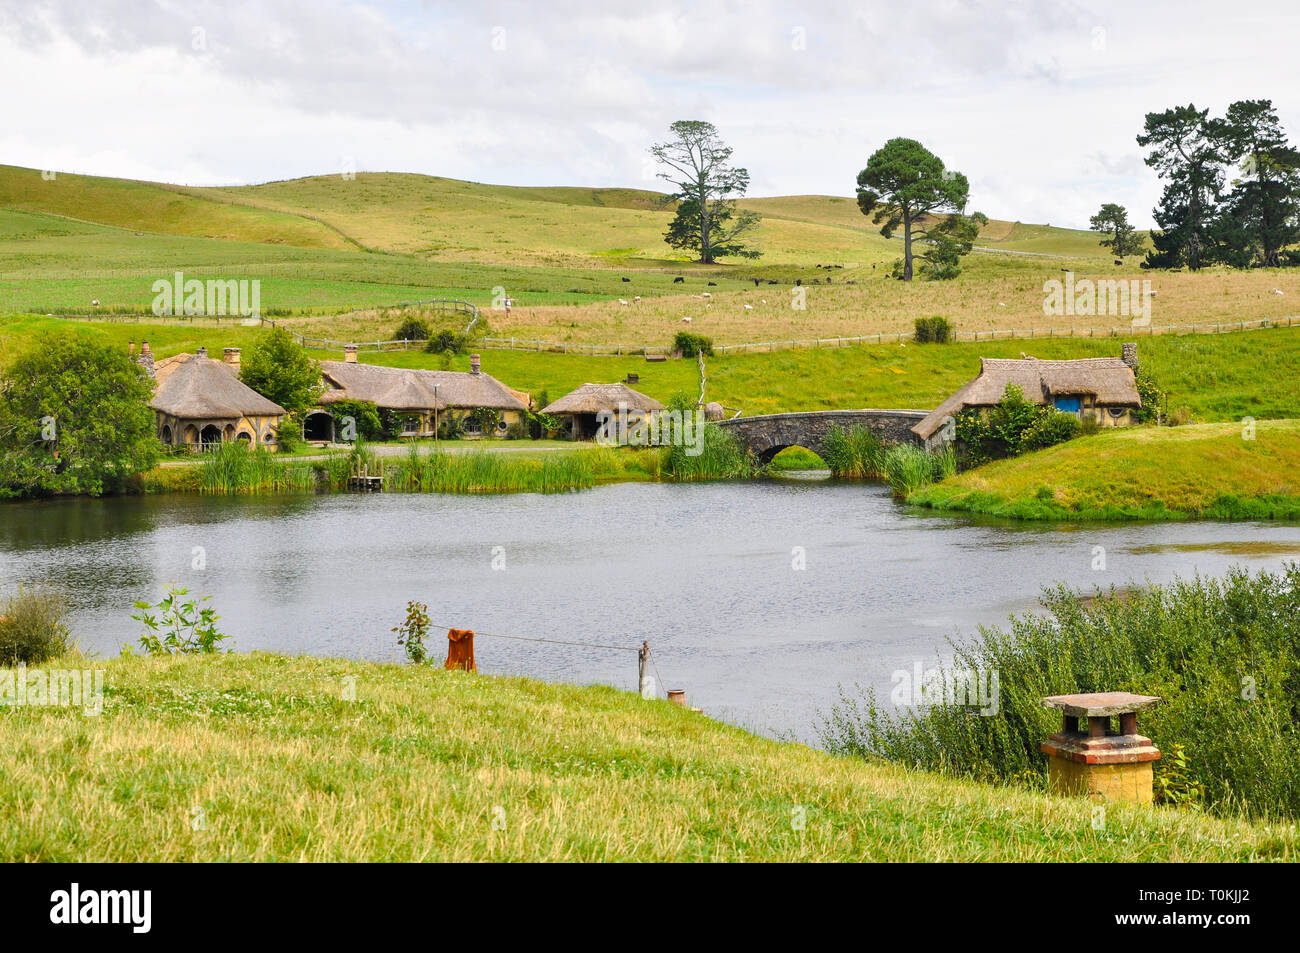 Hobbiton Movie set - Location per il Signore degli Anelli e Lo Hobbit film. Pub, inn, bridge, mulino. attrazione turistica nella regione di Waikato in Nuova Zelanda Foto Stock